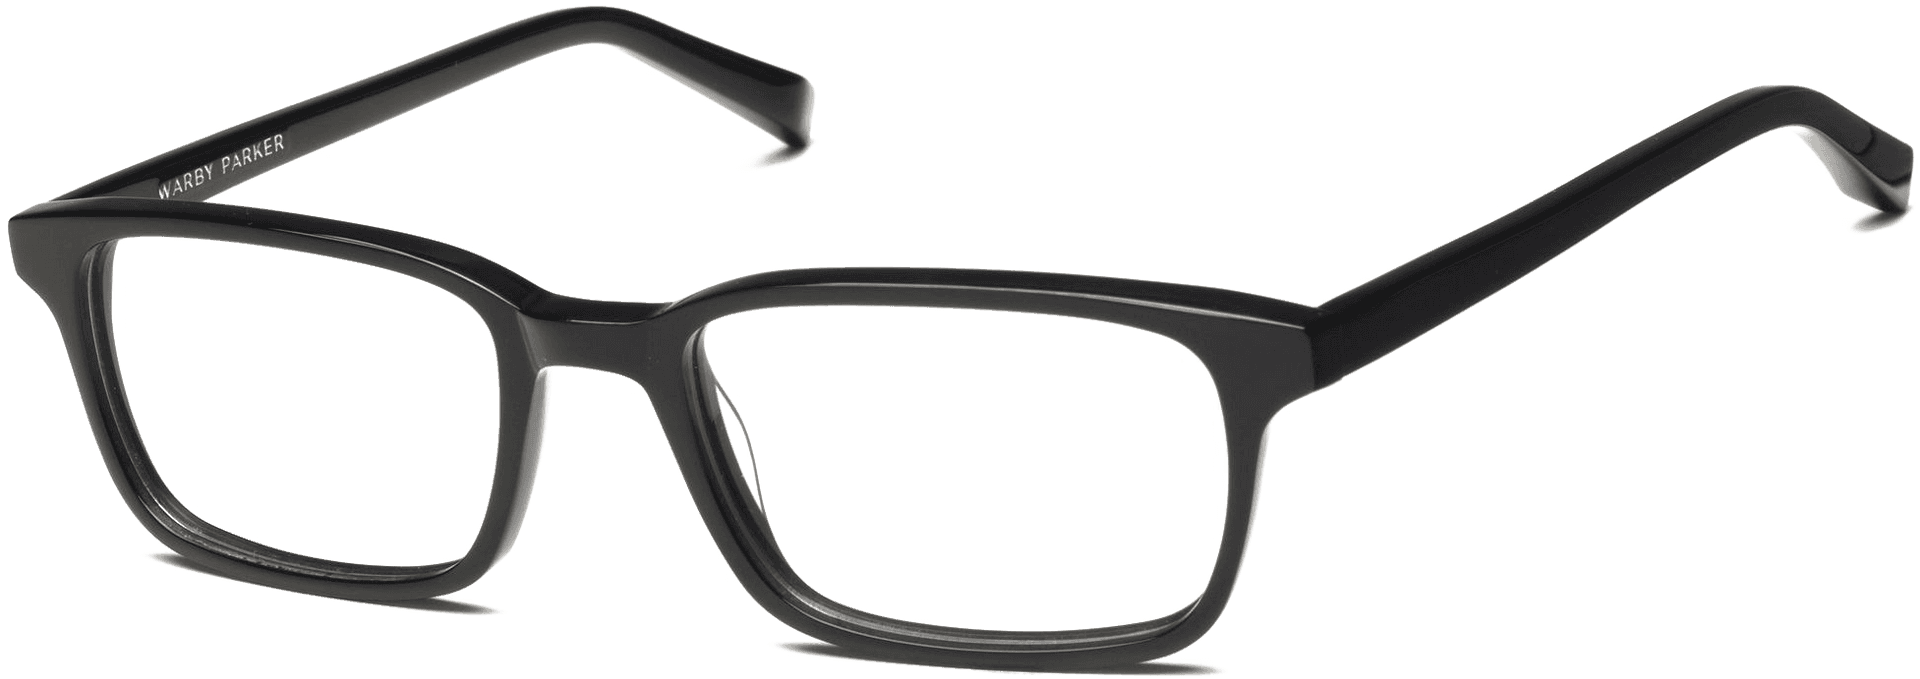 Black Rectangular Eyeglasses Transparent Background PNG